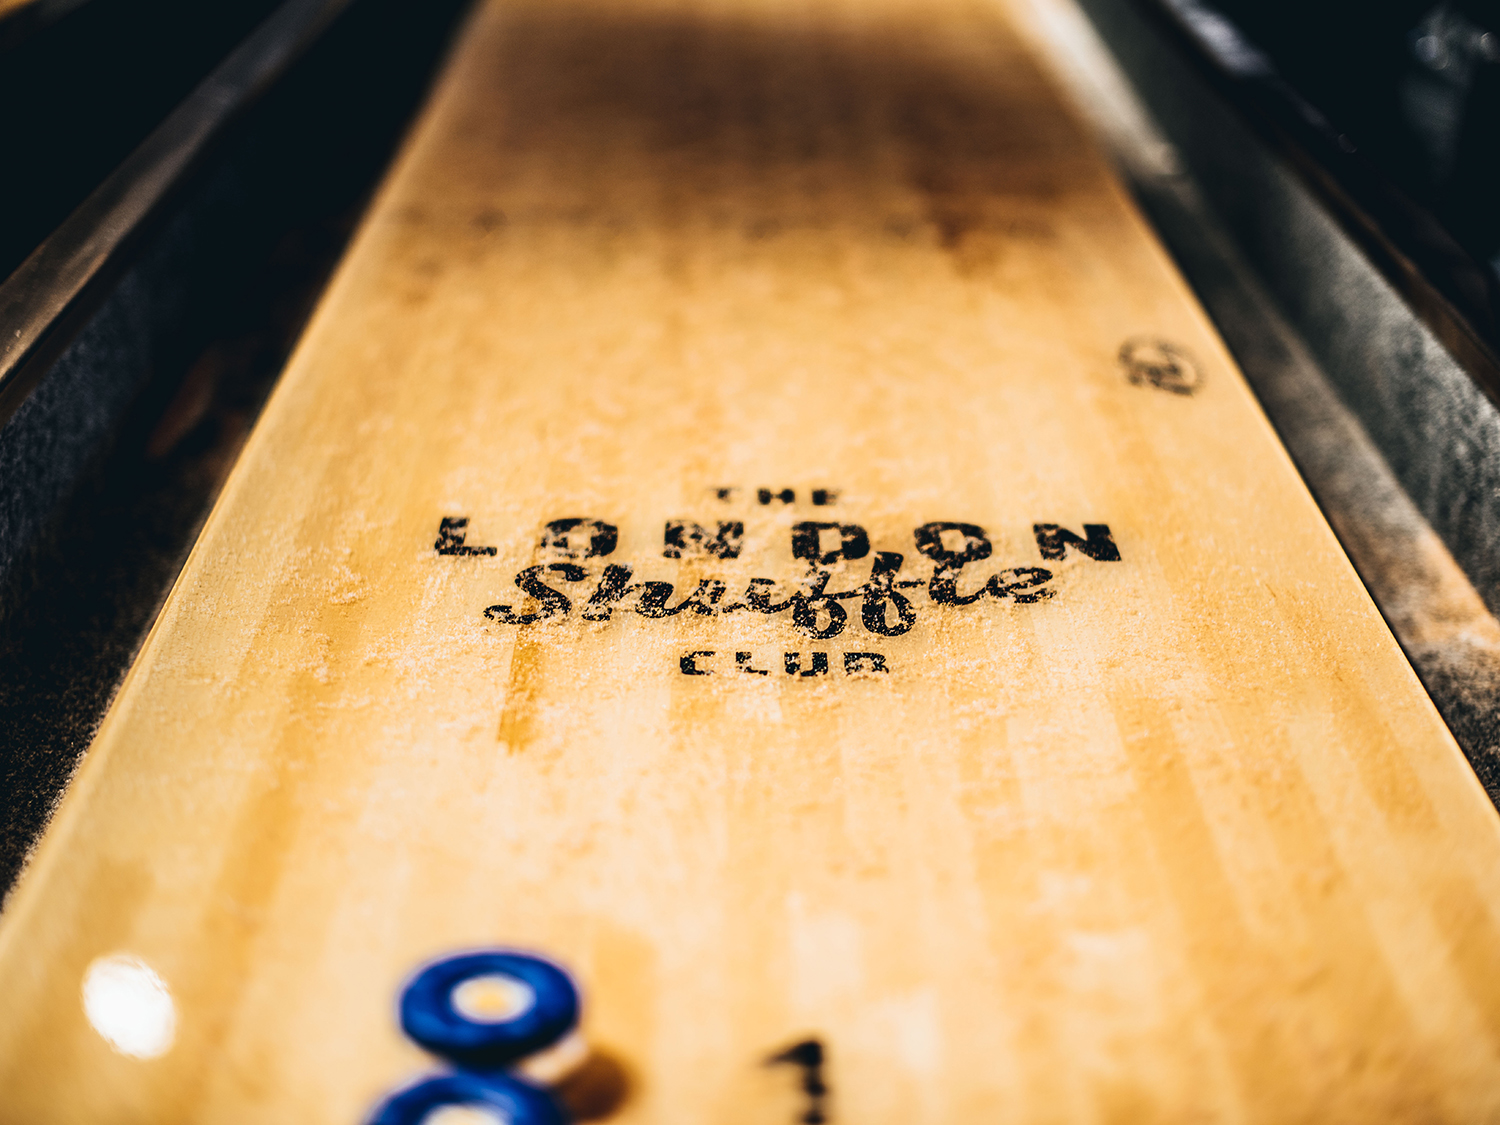 Shuffleboarding at The London Shuffle Club Things to do in London photo image